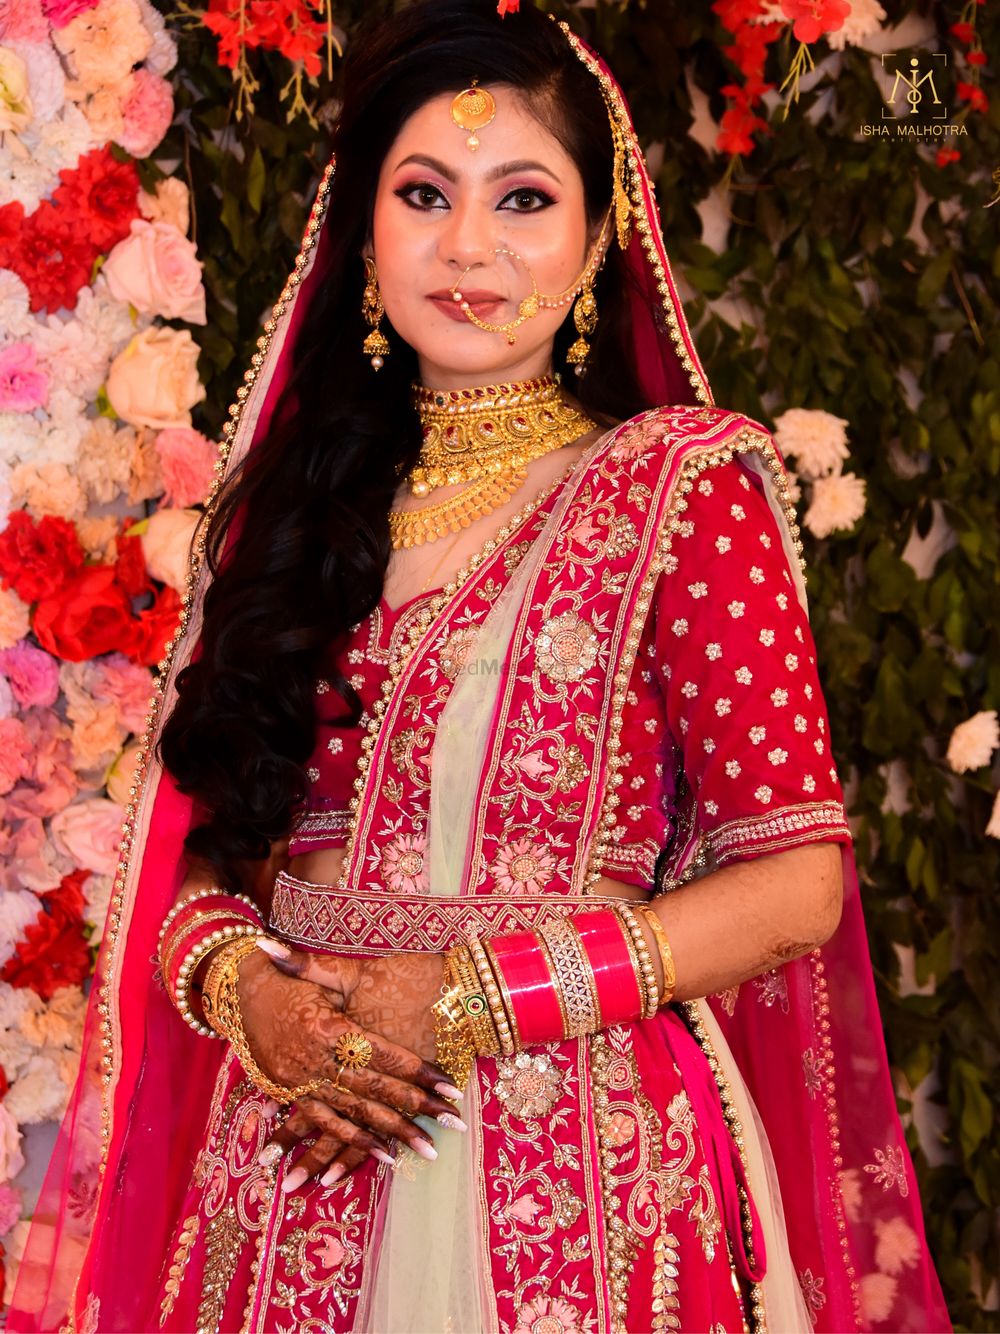 Photo From Bridal looks by Isha Malhotra  - By Isha Malhotra Artistry 